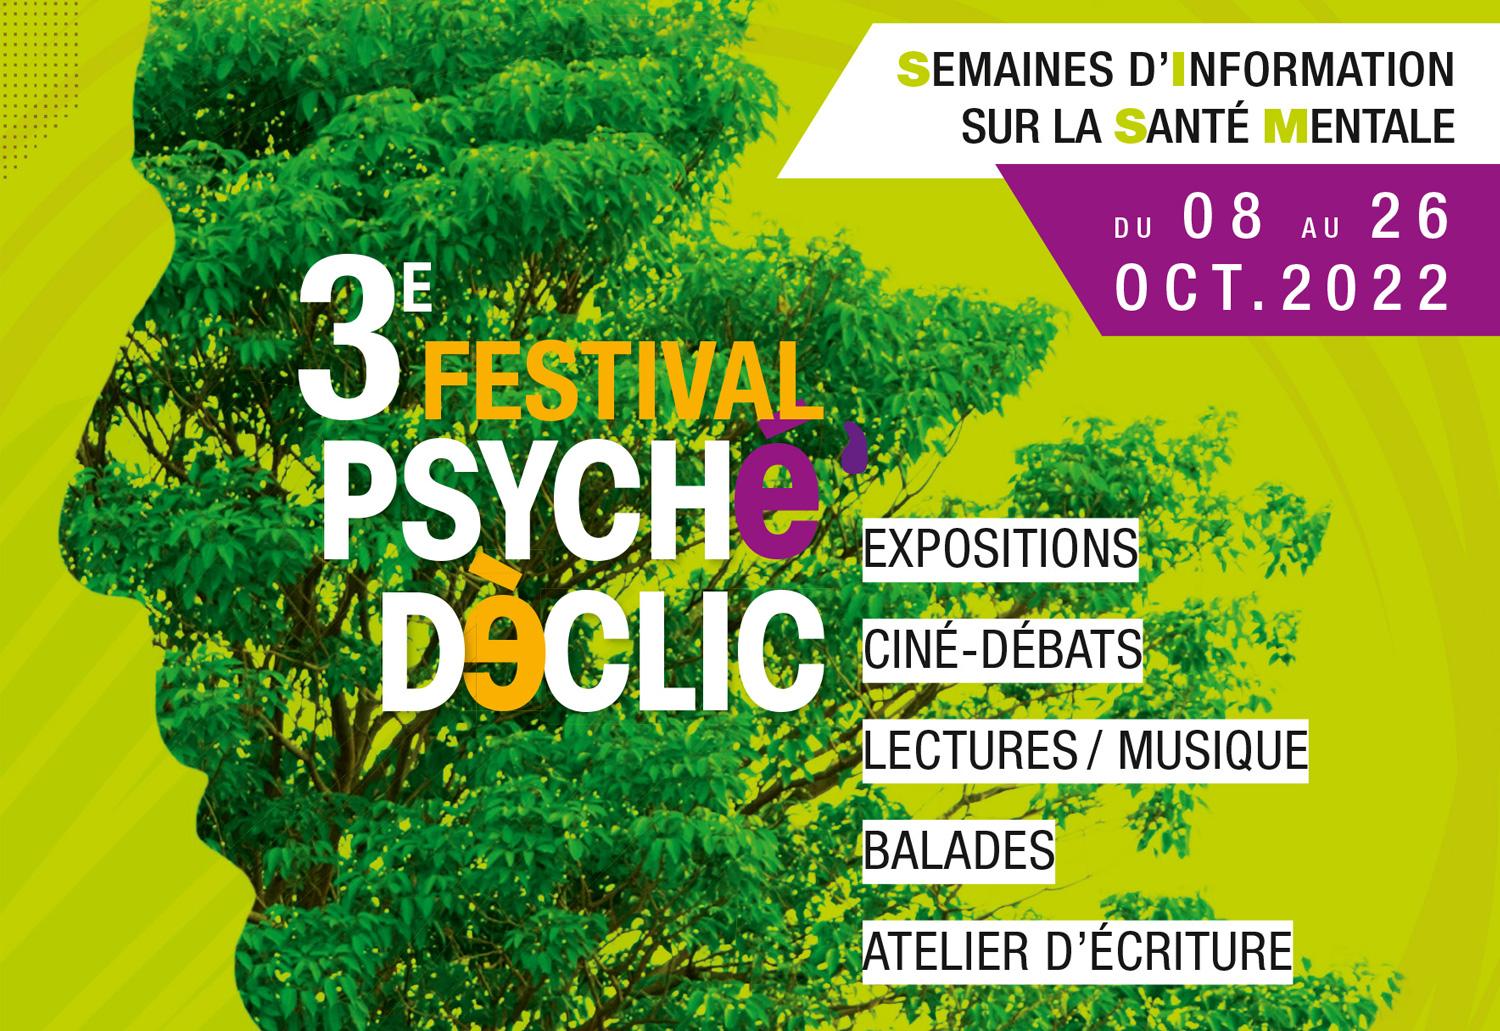 3e Festival Psyché Déclic